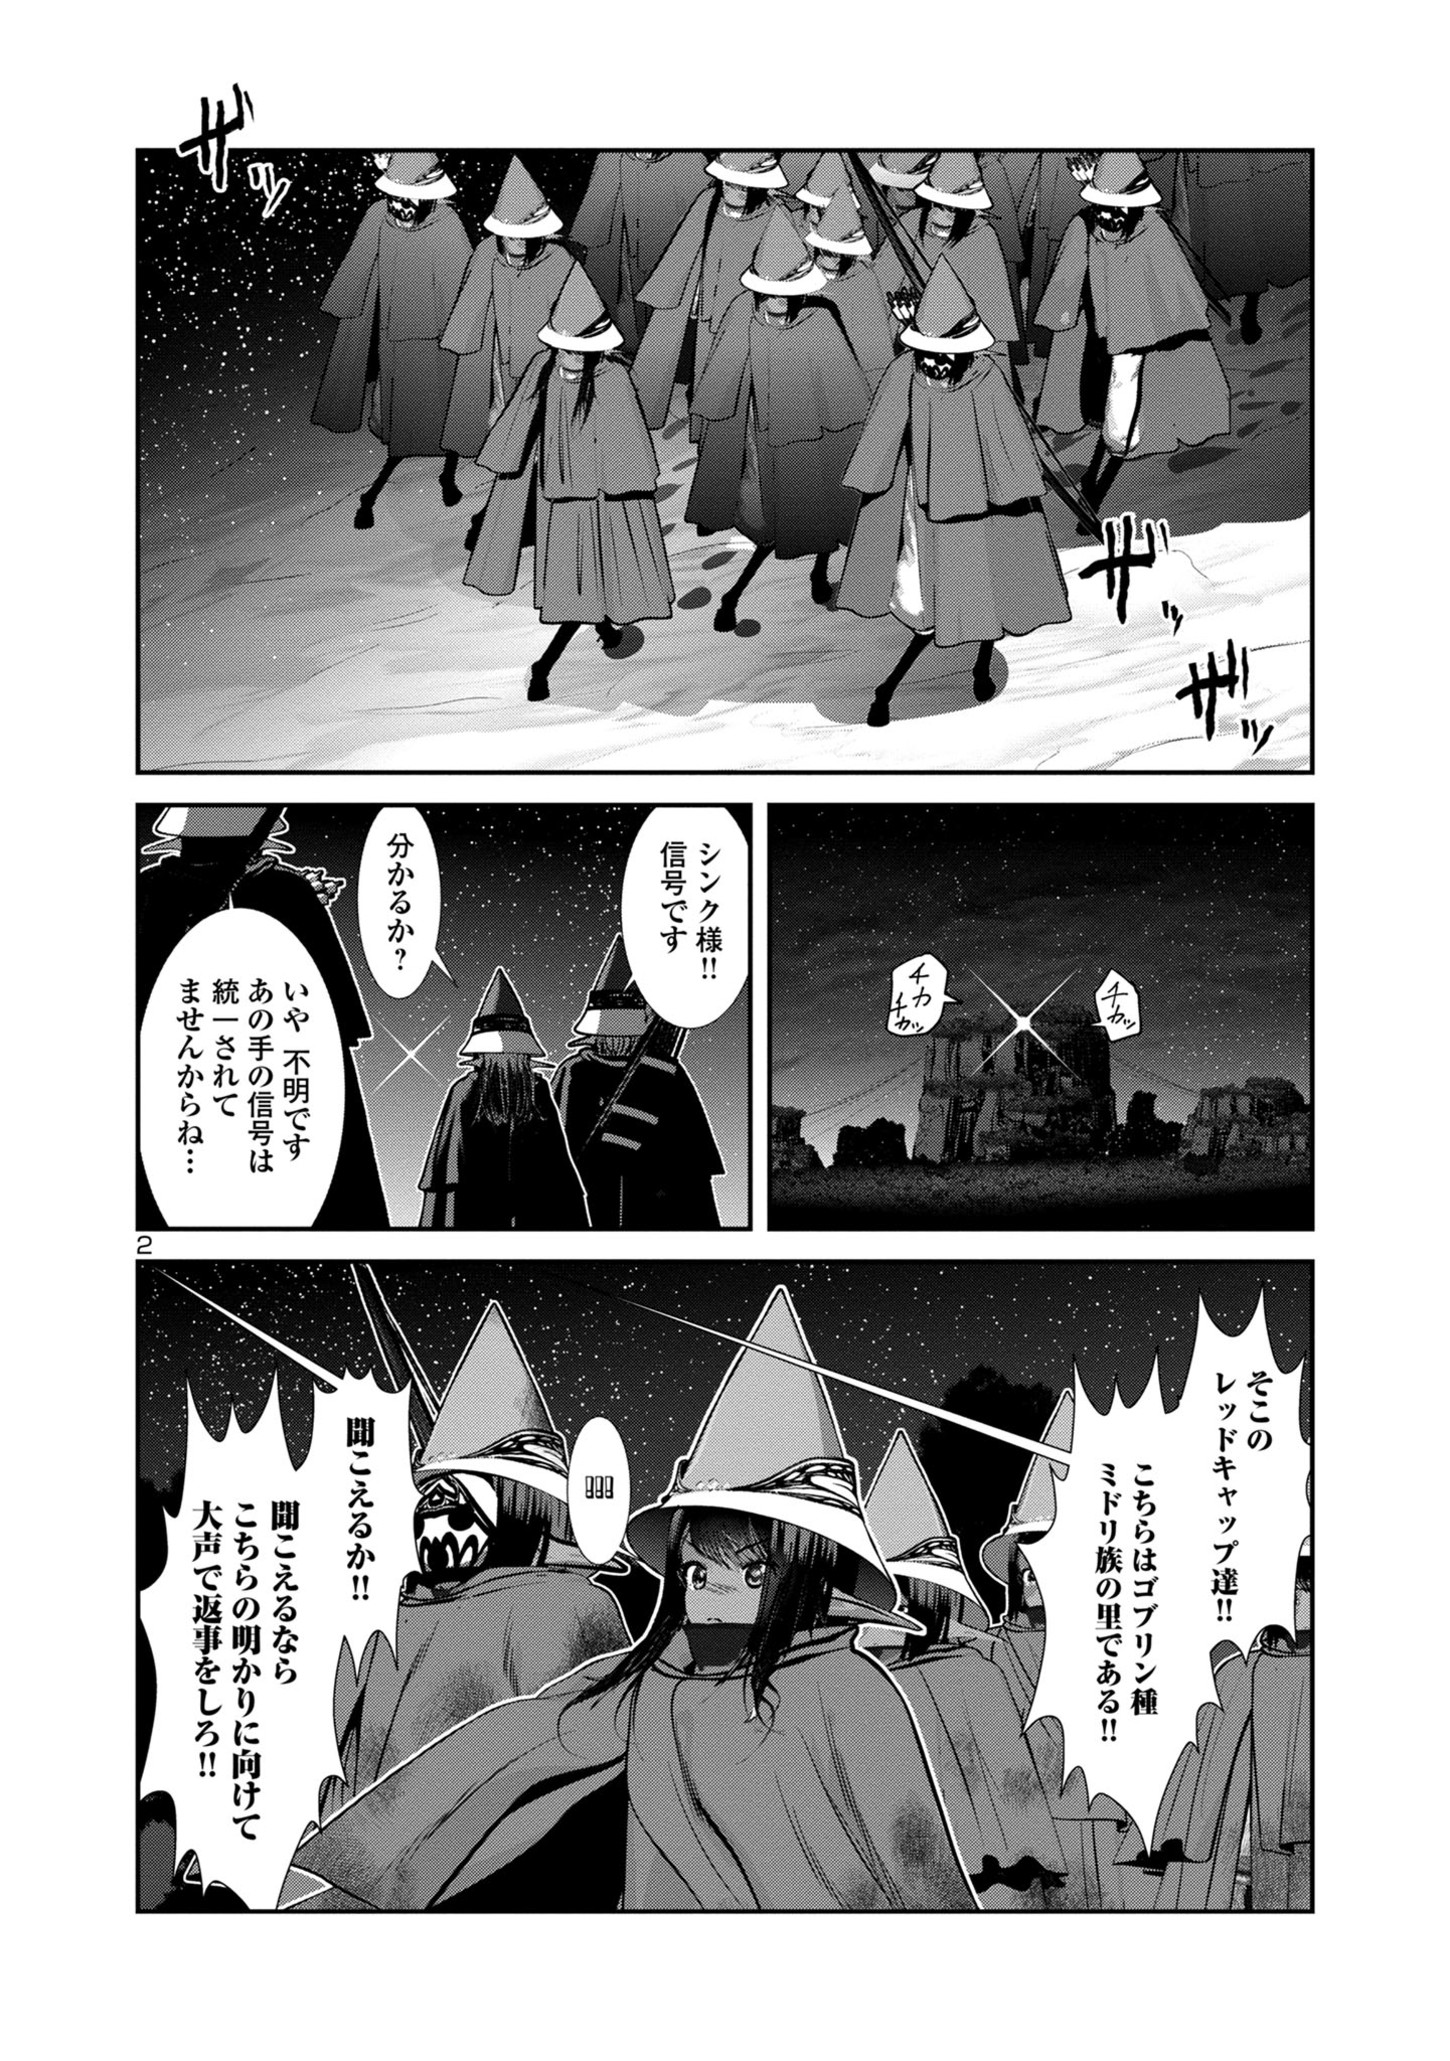 Kagakuteki ni Sonzai shiuru Creature Musume no Kansatsu Nisshi - Chapter 81 - Page 2